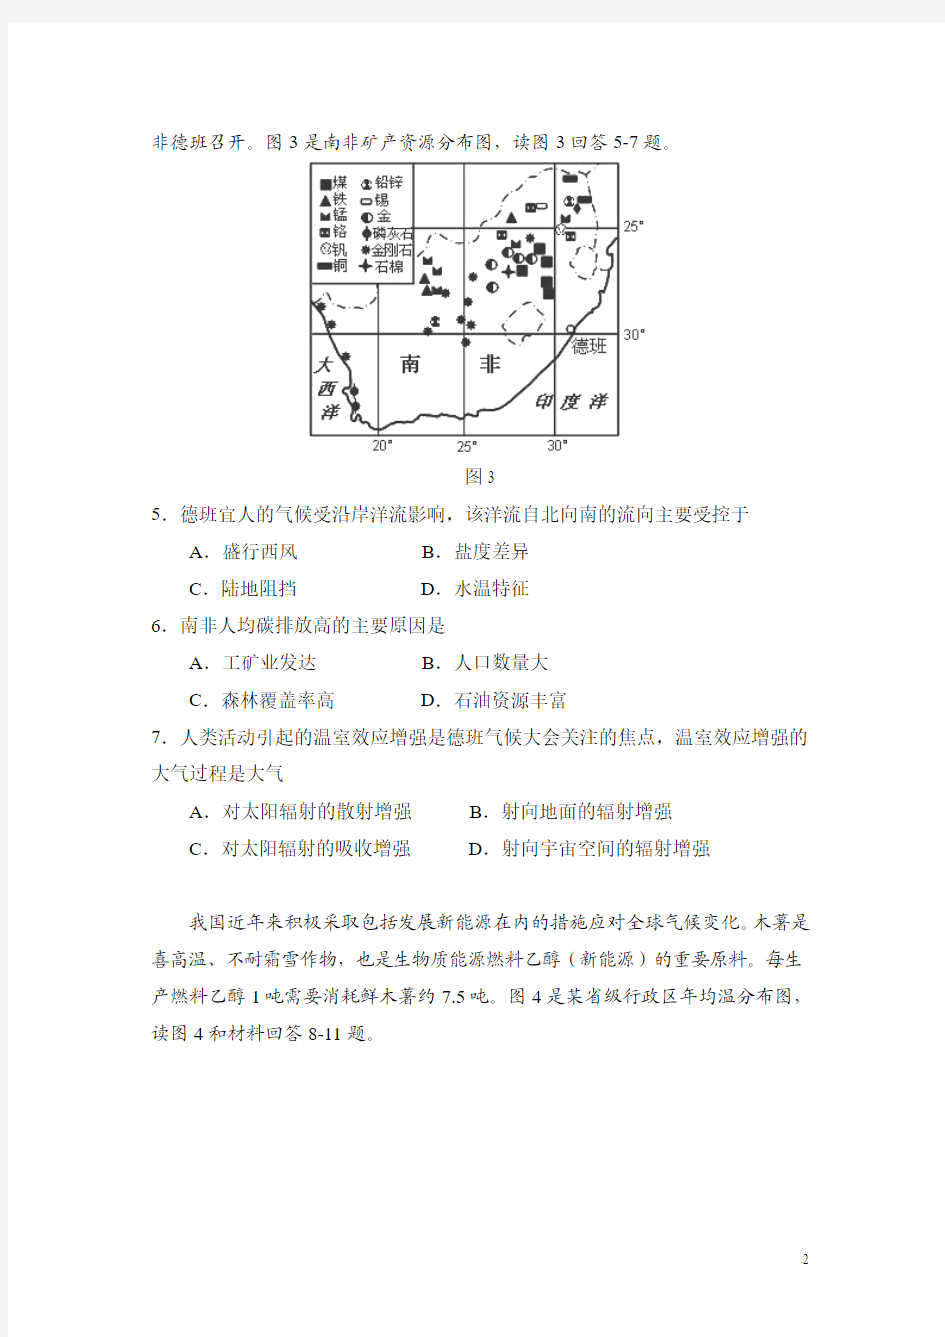 2012年高考真题——文综地理(重庆卷)解析版